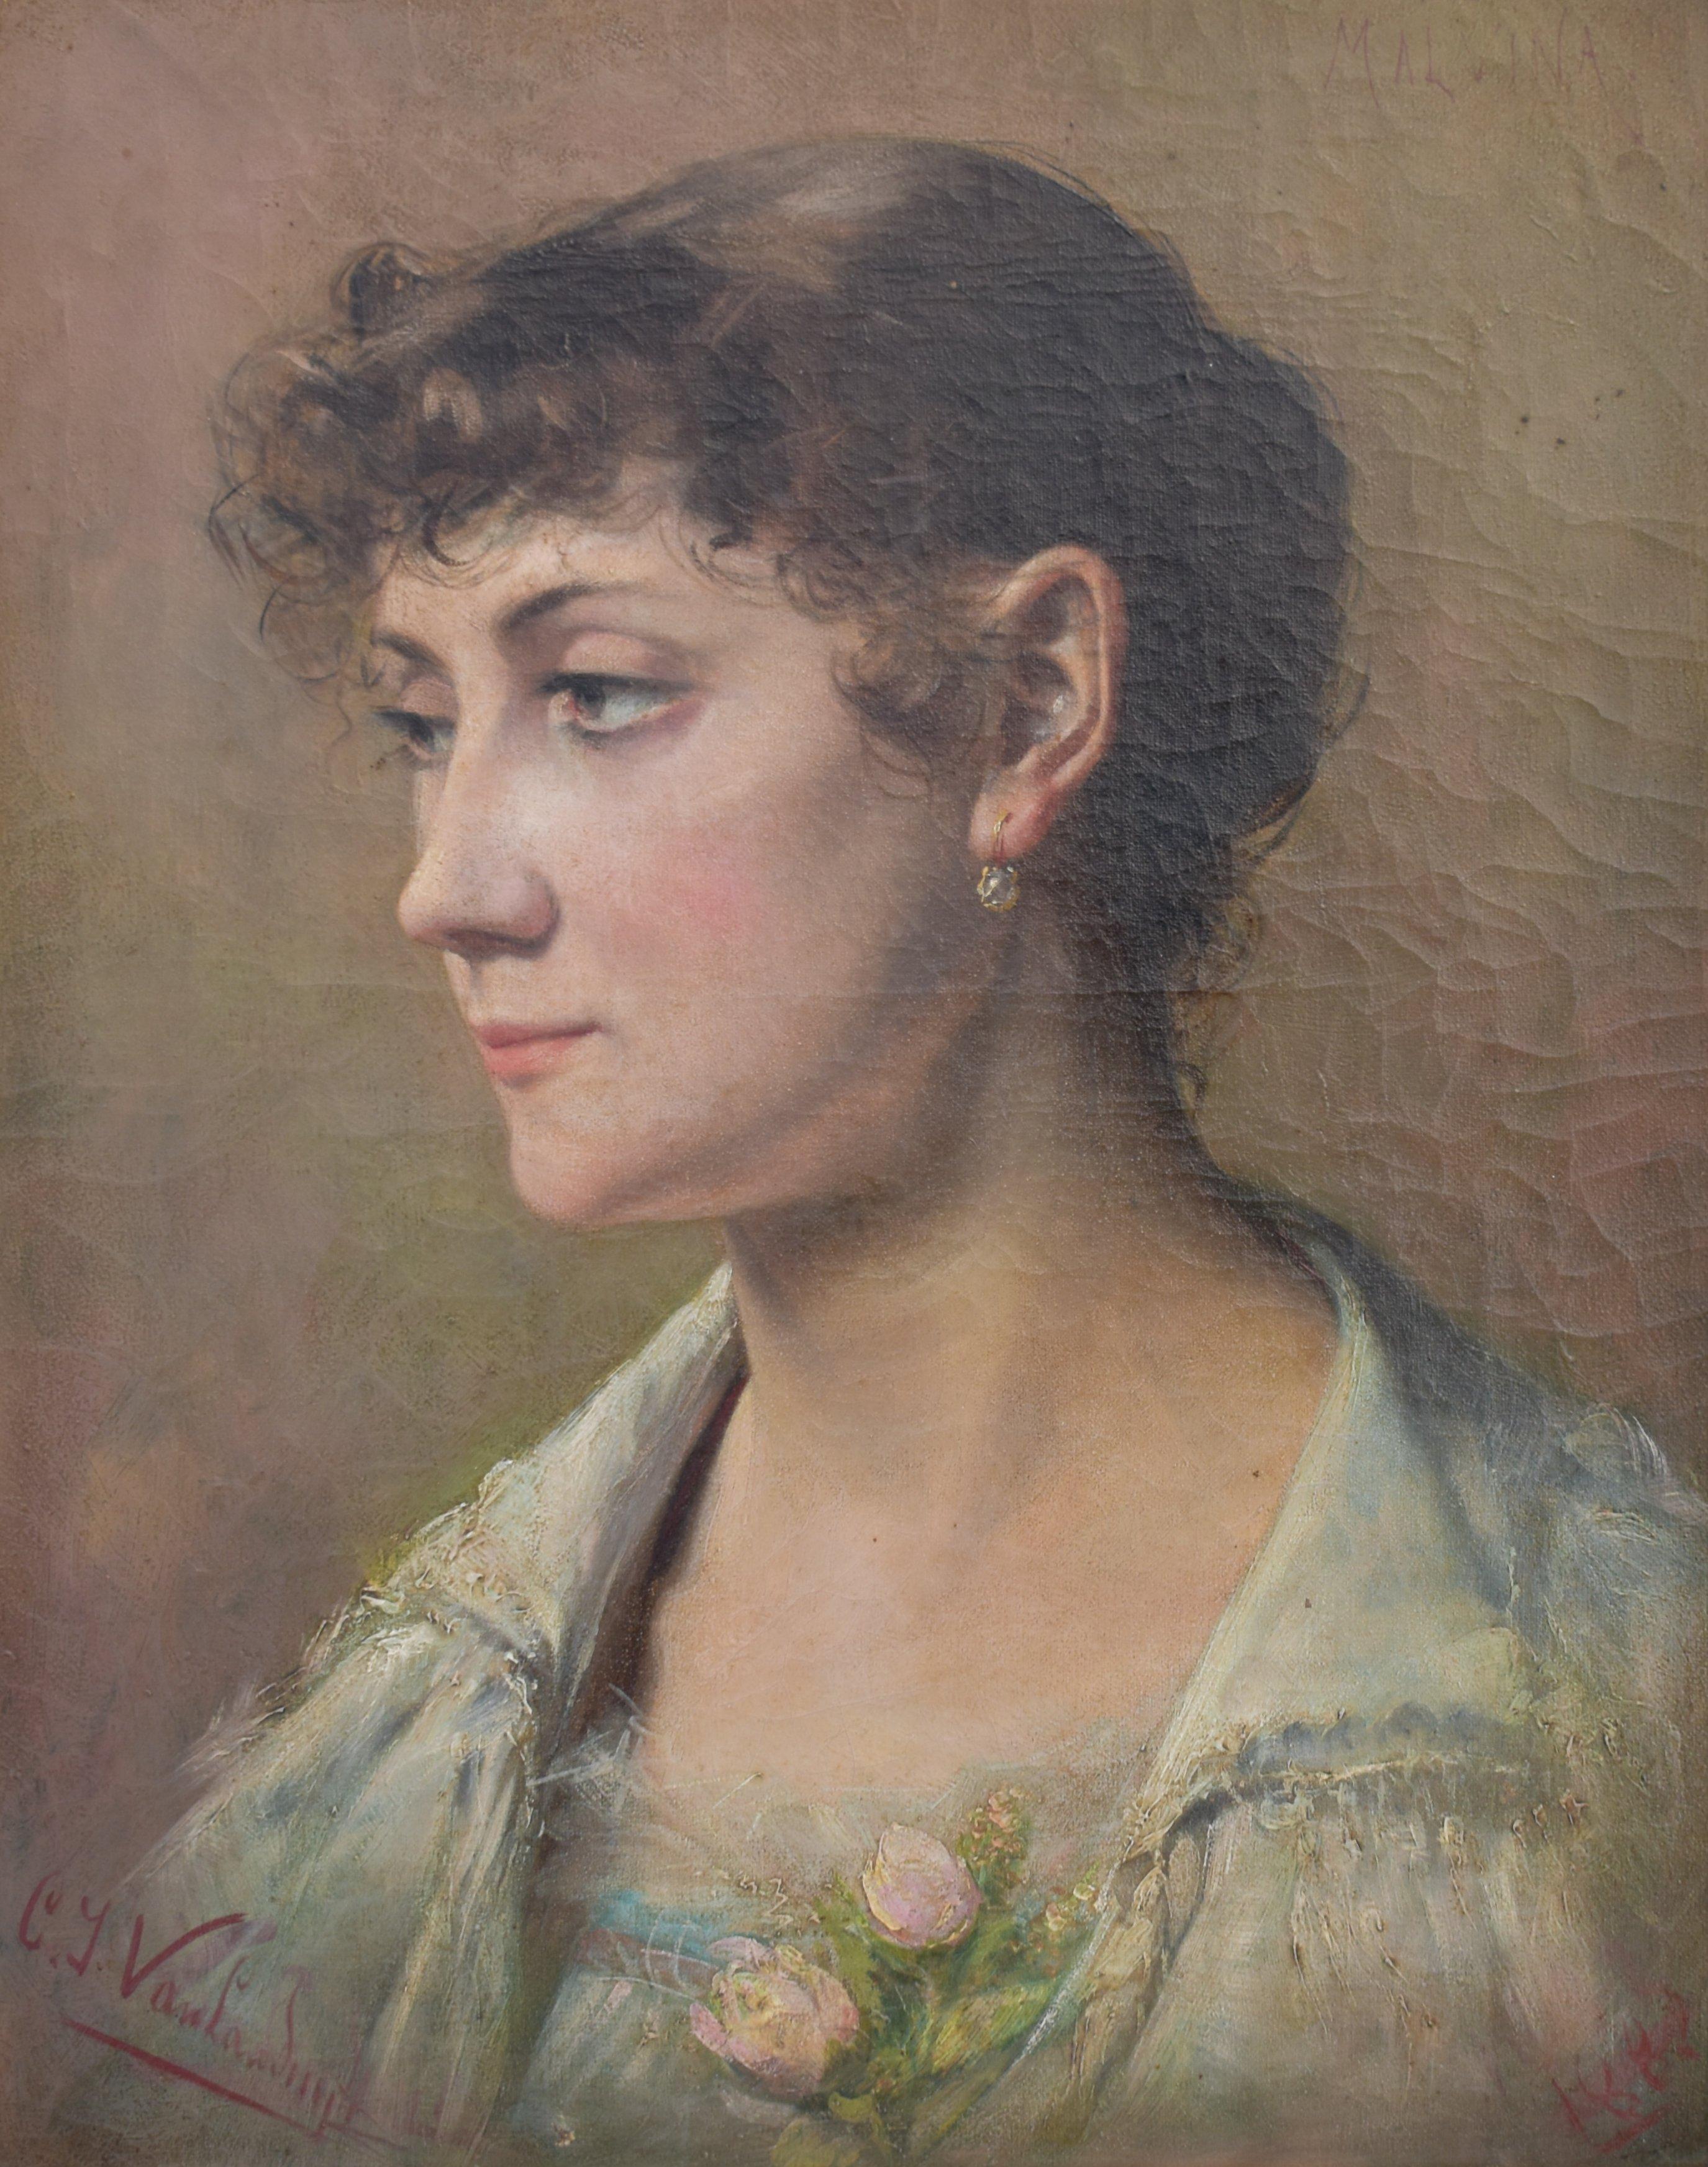 Un portrait sensible  de Malvina signée, datée de 1882 et présentée dans son magnifique cadre doré d'origine.

Van Landuyt était un peintre de l'école belge qui a étudié à l'Académie royale des beaux-arts de Bruxelles.  Il a été l'élève de Paul